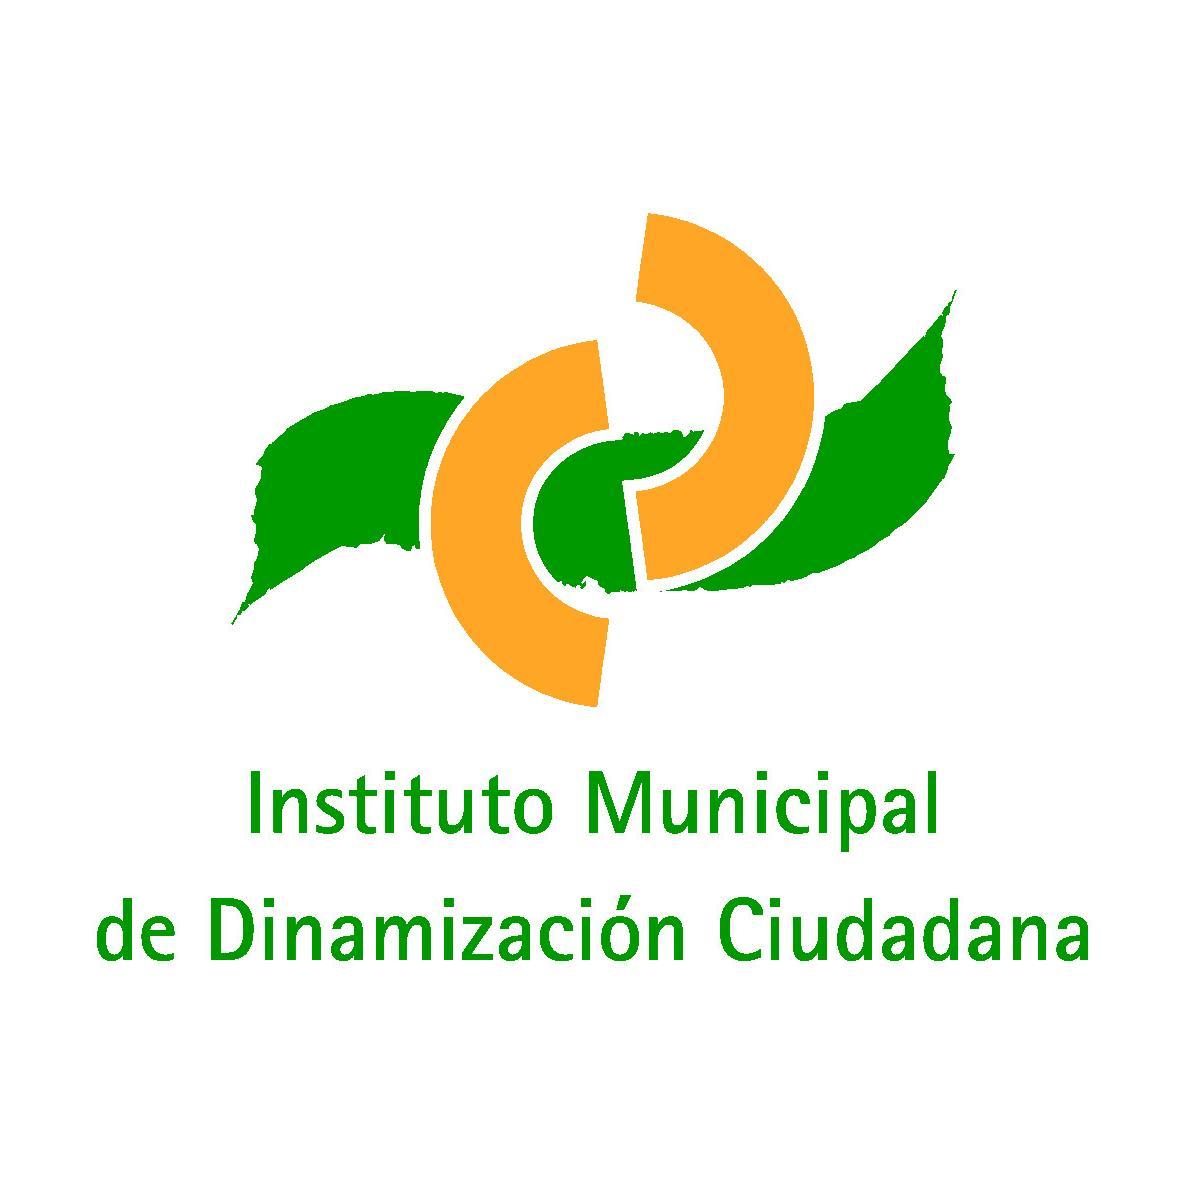 Twitter oficial de la Concejalía de Cultura y Deportes del Ayuntamiento de Mairena del Aljarafe